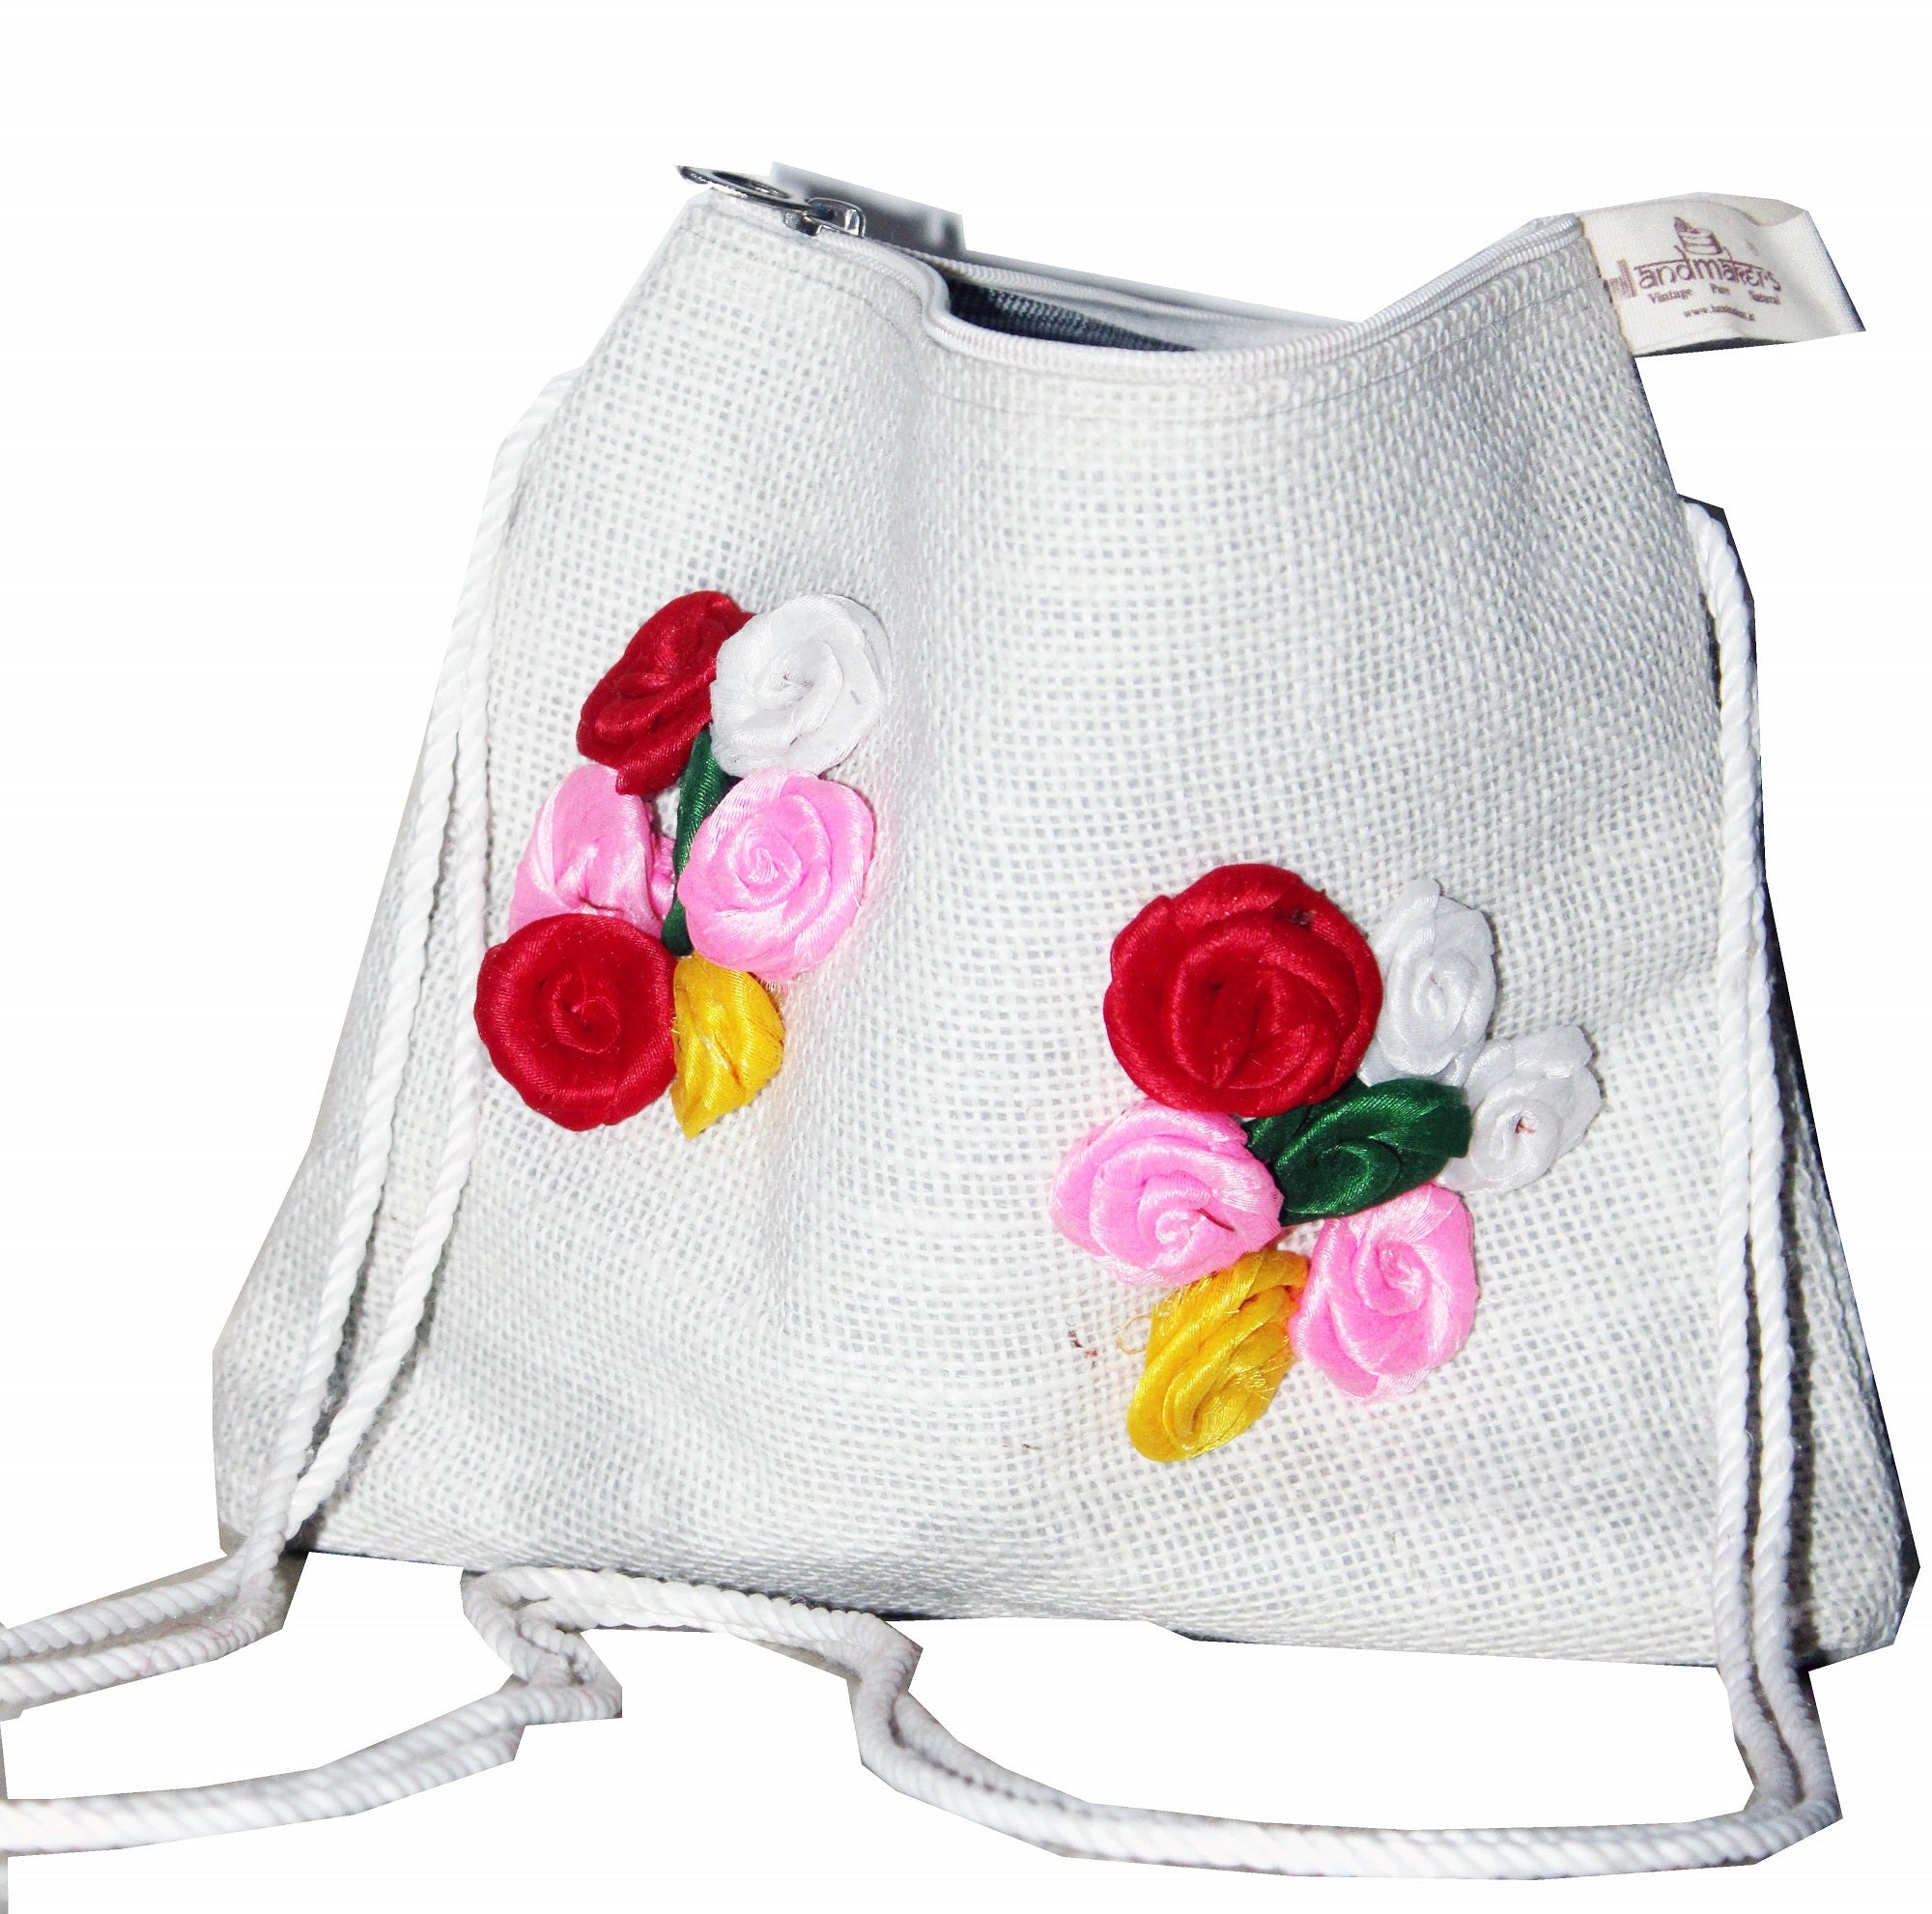 Jute Bag Design | Jute bags design, Jute bags, Bags